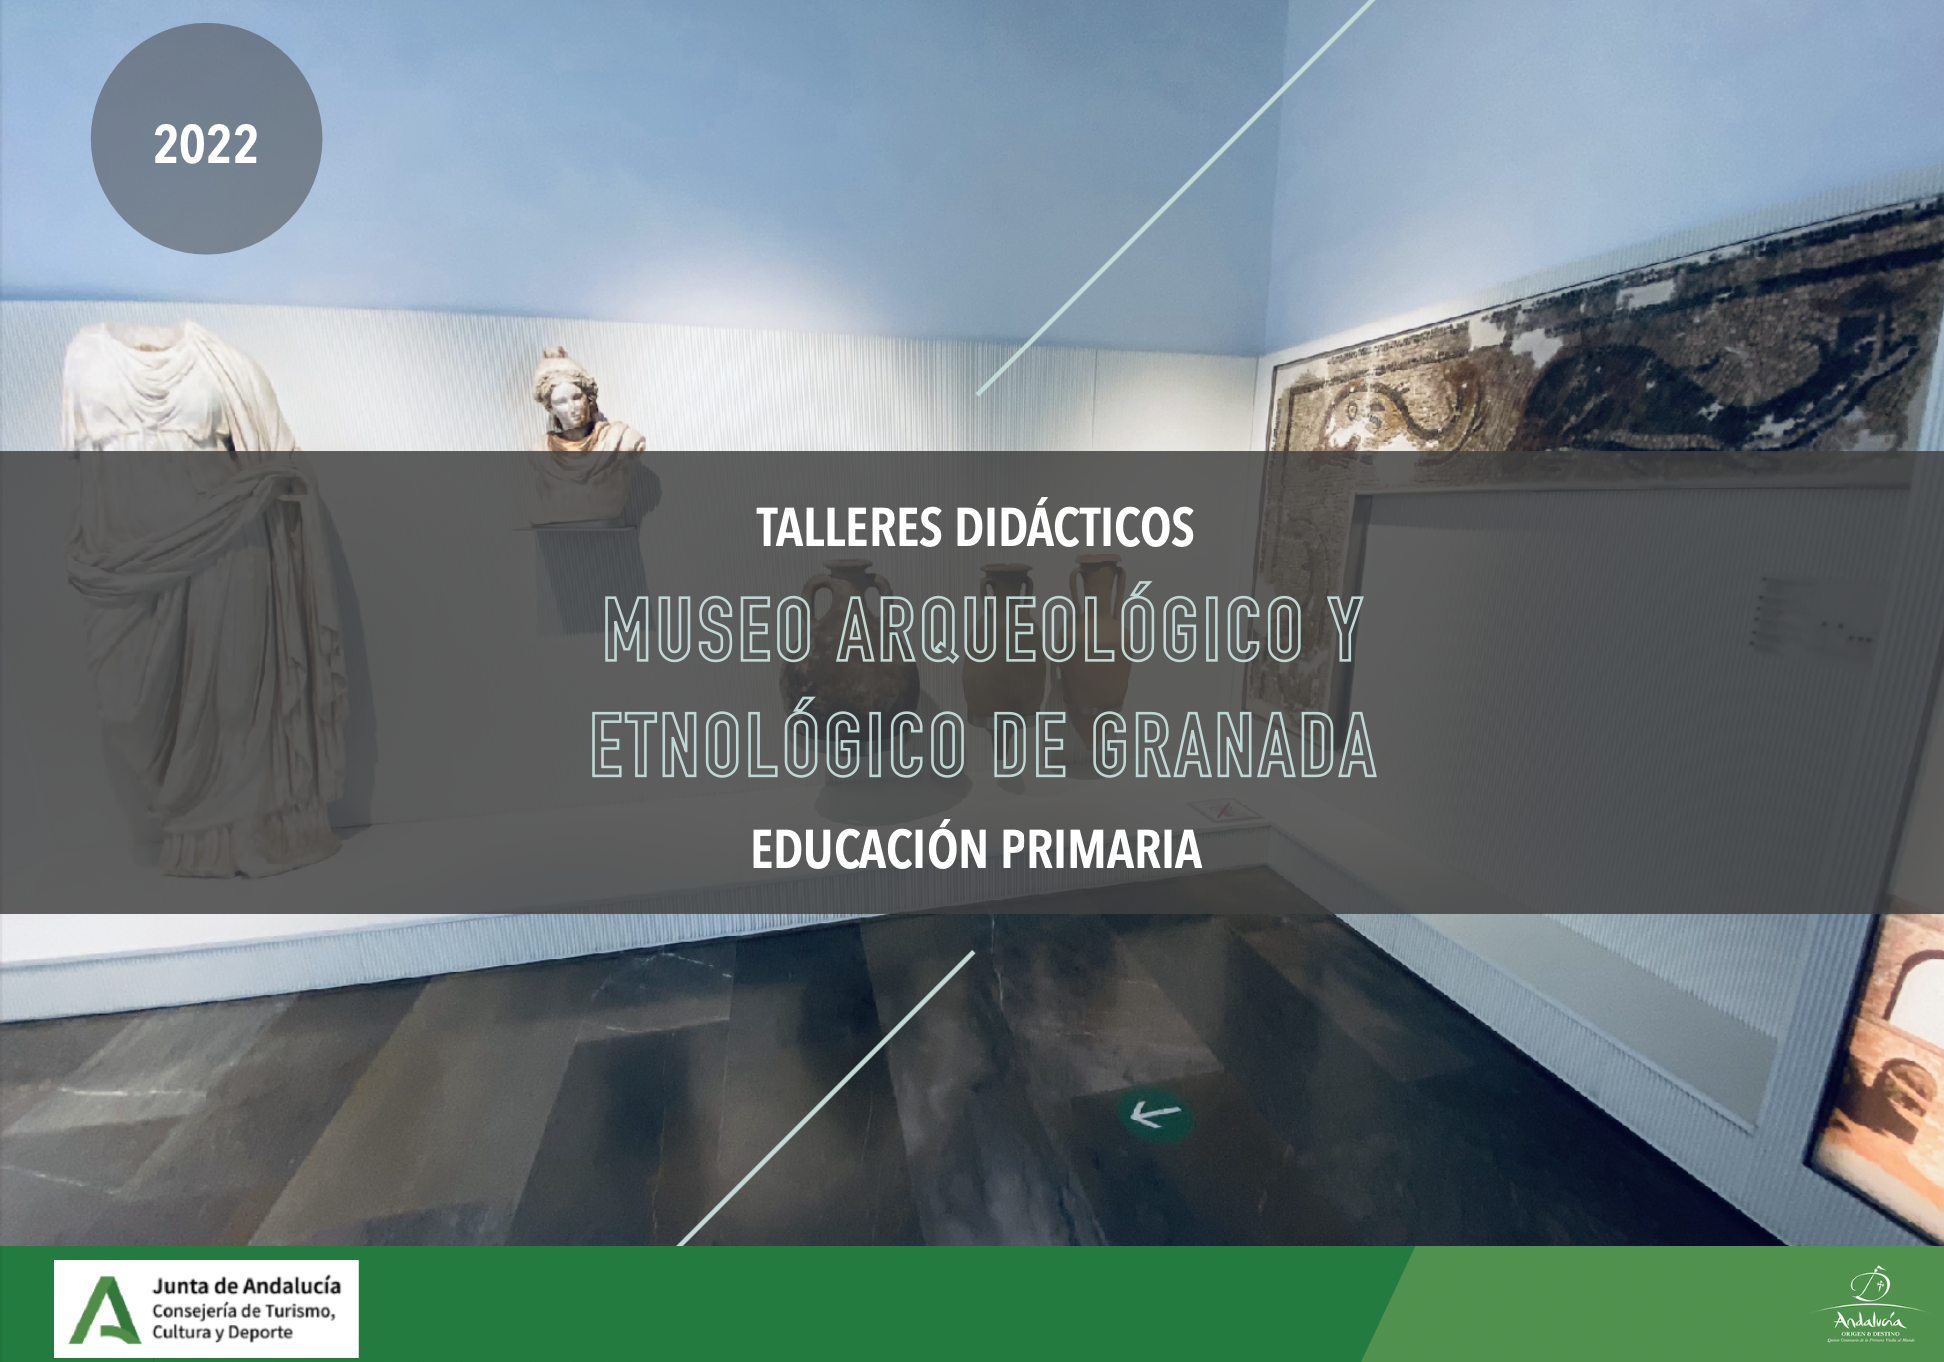 Nueva propuesta de talleres didácticos en el Museo Arqueológico y Etnológico de Granada dirigidos al público escolar